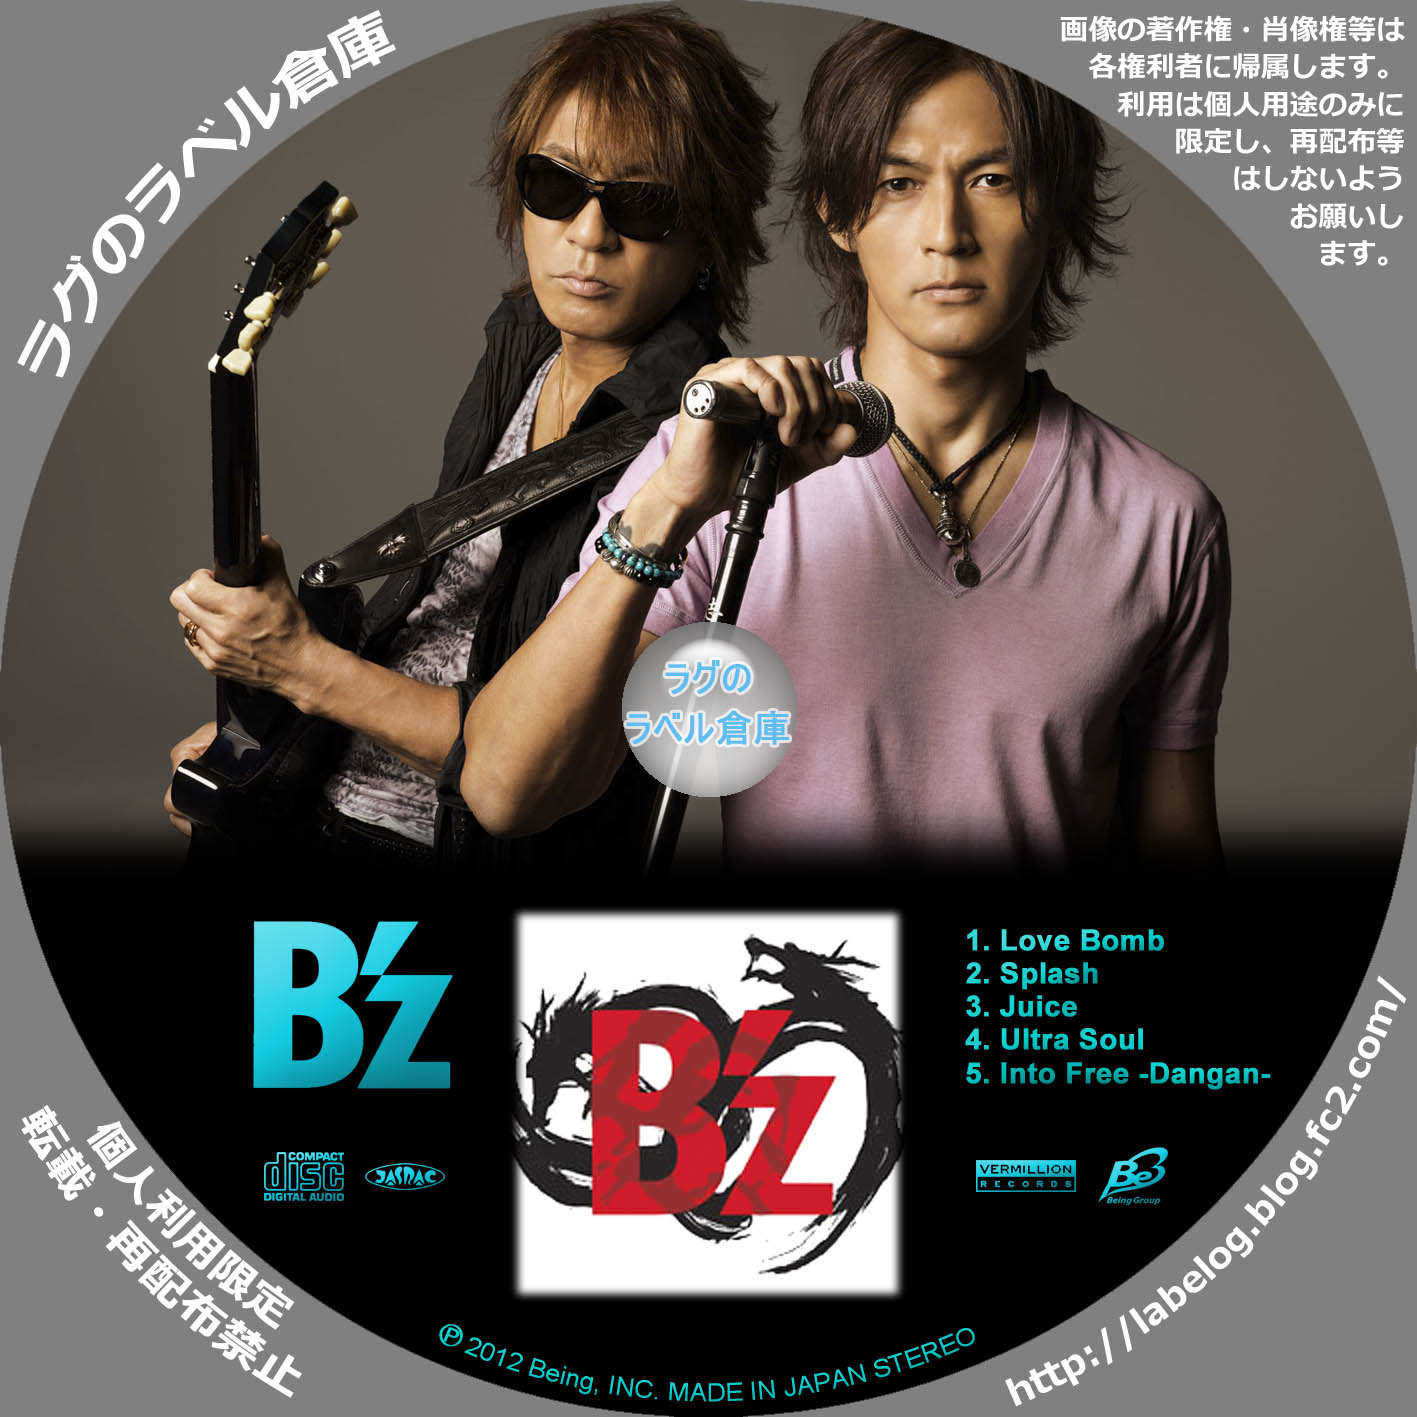 B'z | ラグの CD / DVD / BD 自作ラベル倉庫